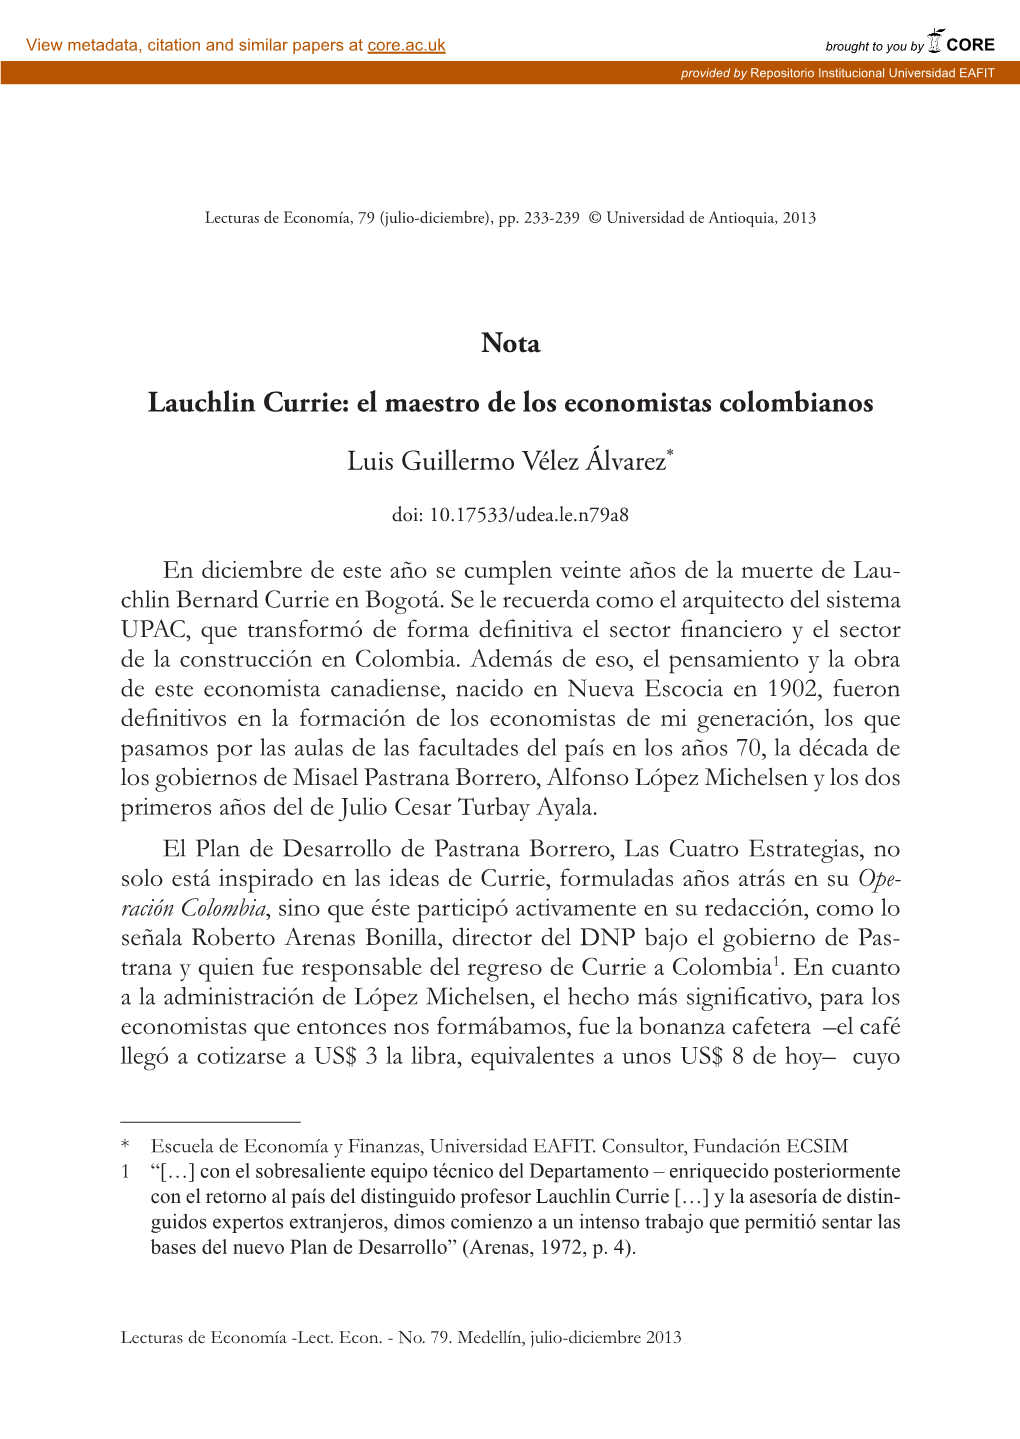 Lauchlin Currie: El Maestro De Los Economistas Colombianos